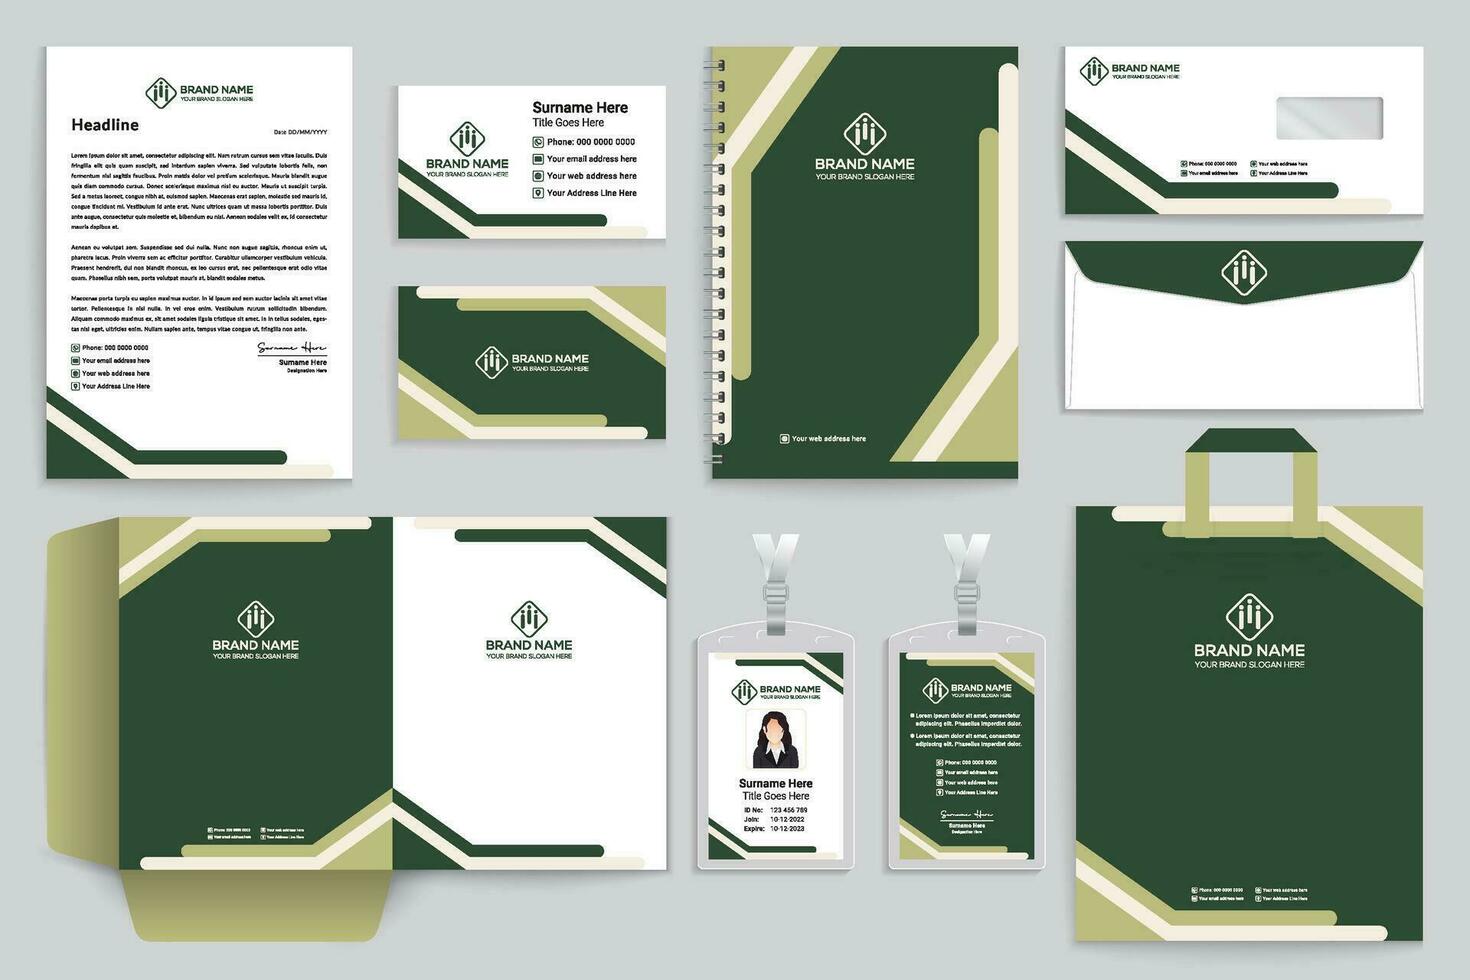 zakelijke groen kleur schrijfbehoeften ontwerp vector